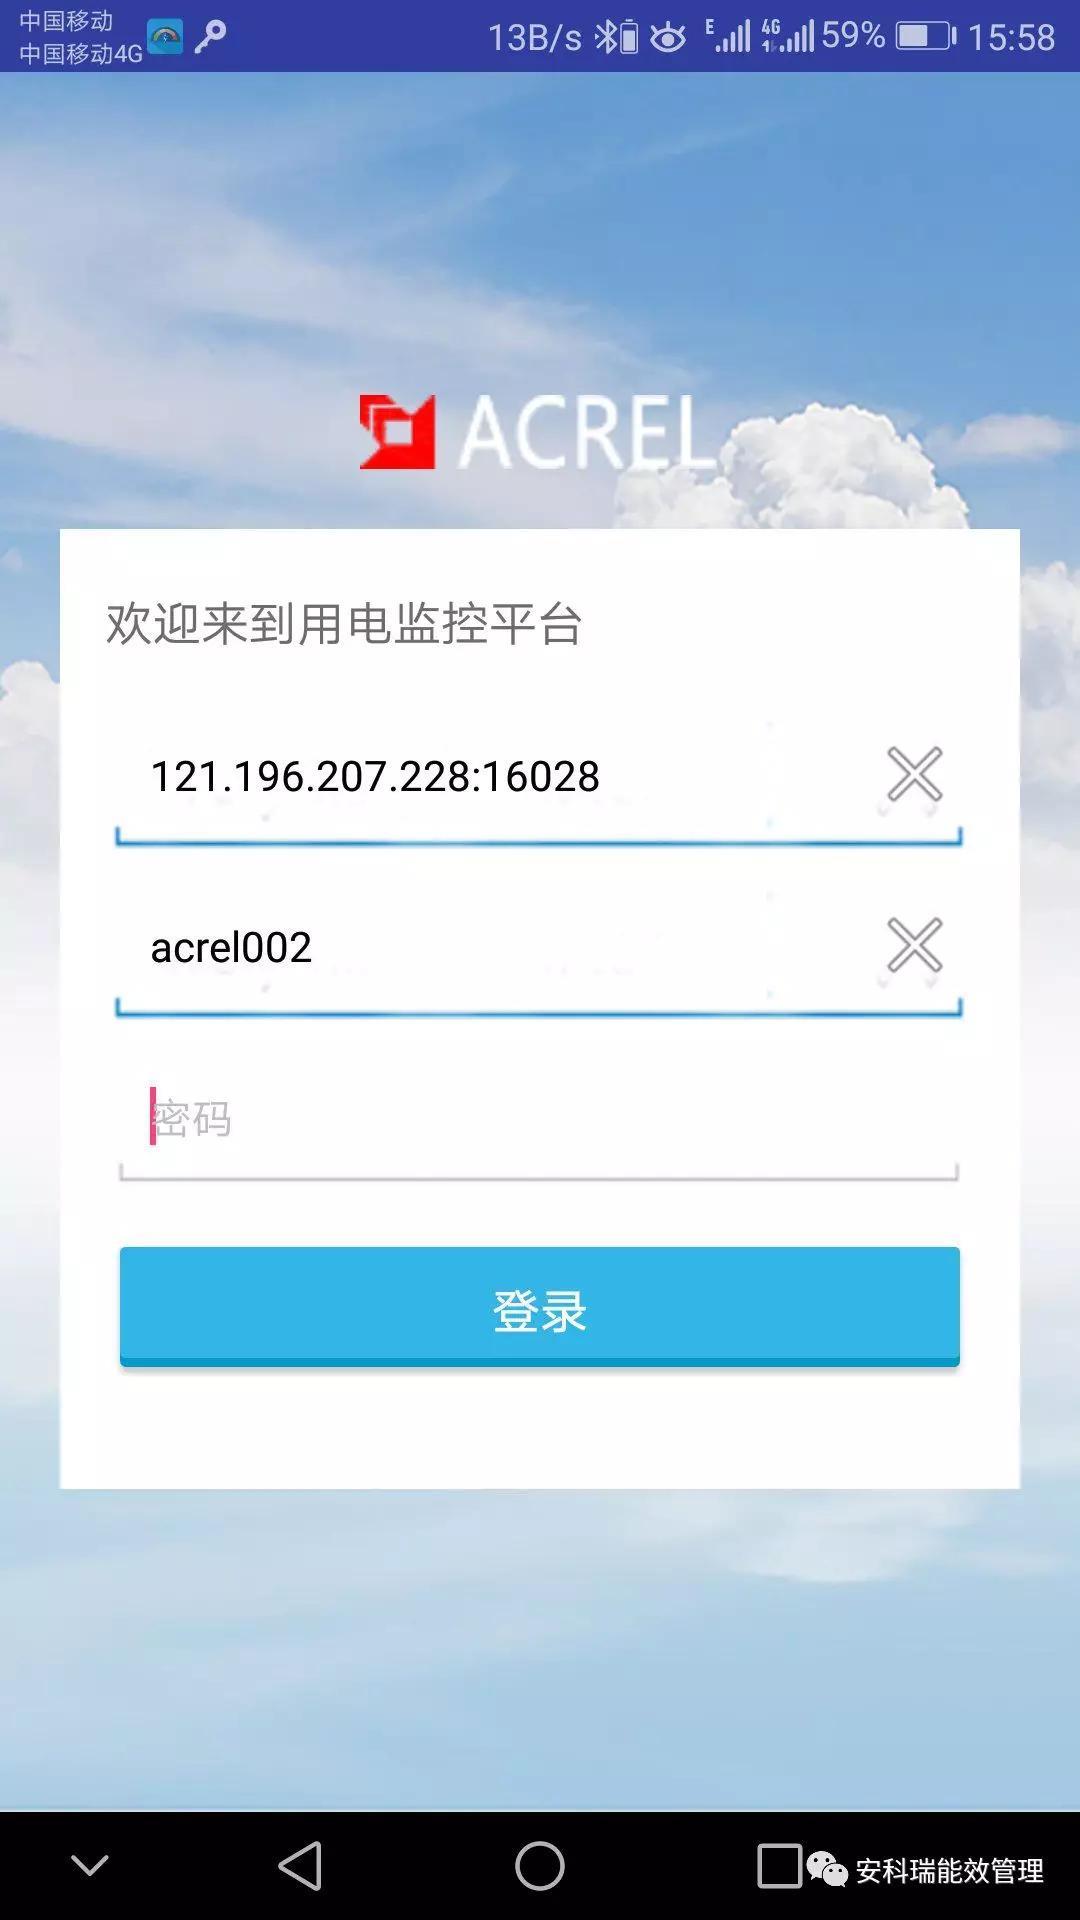 重庆国产安全用电监管云平台